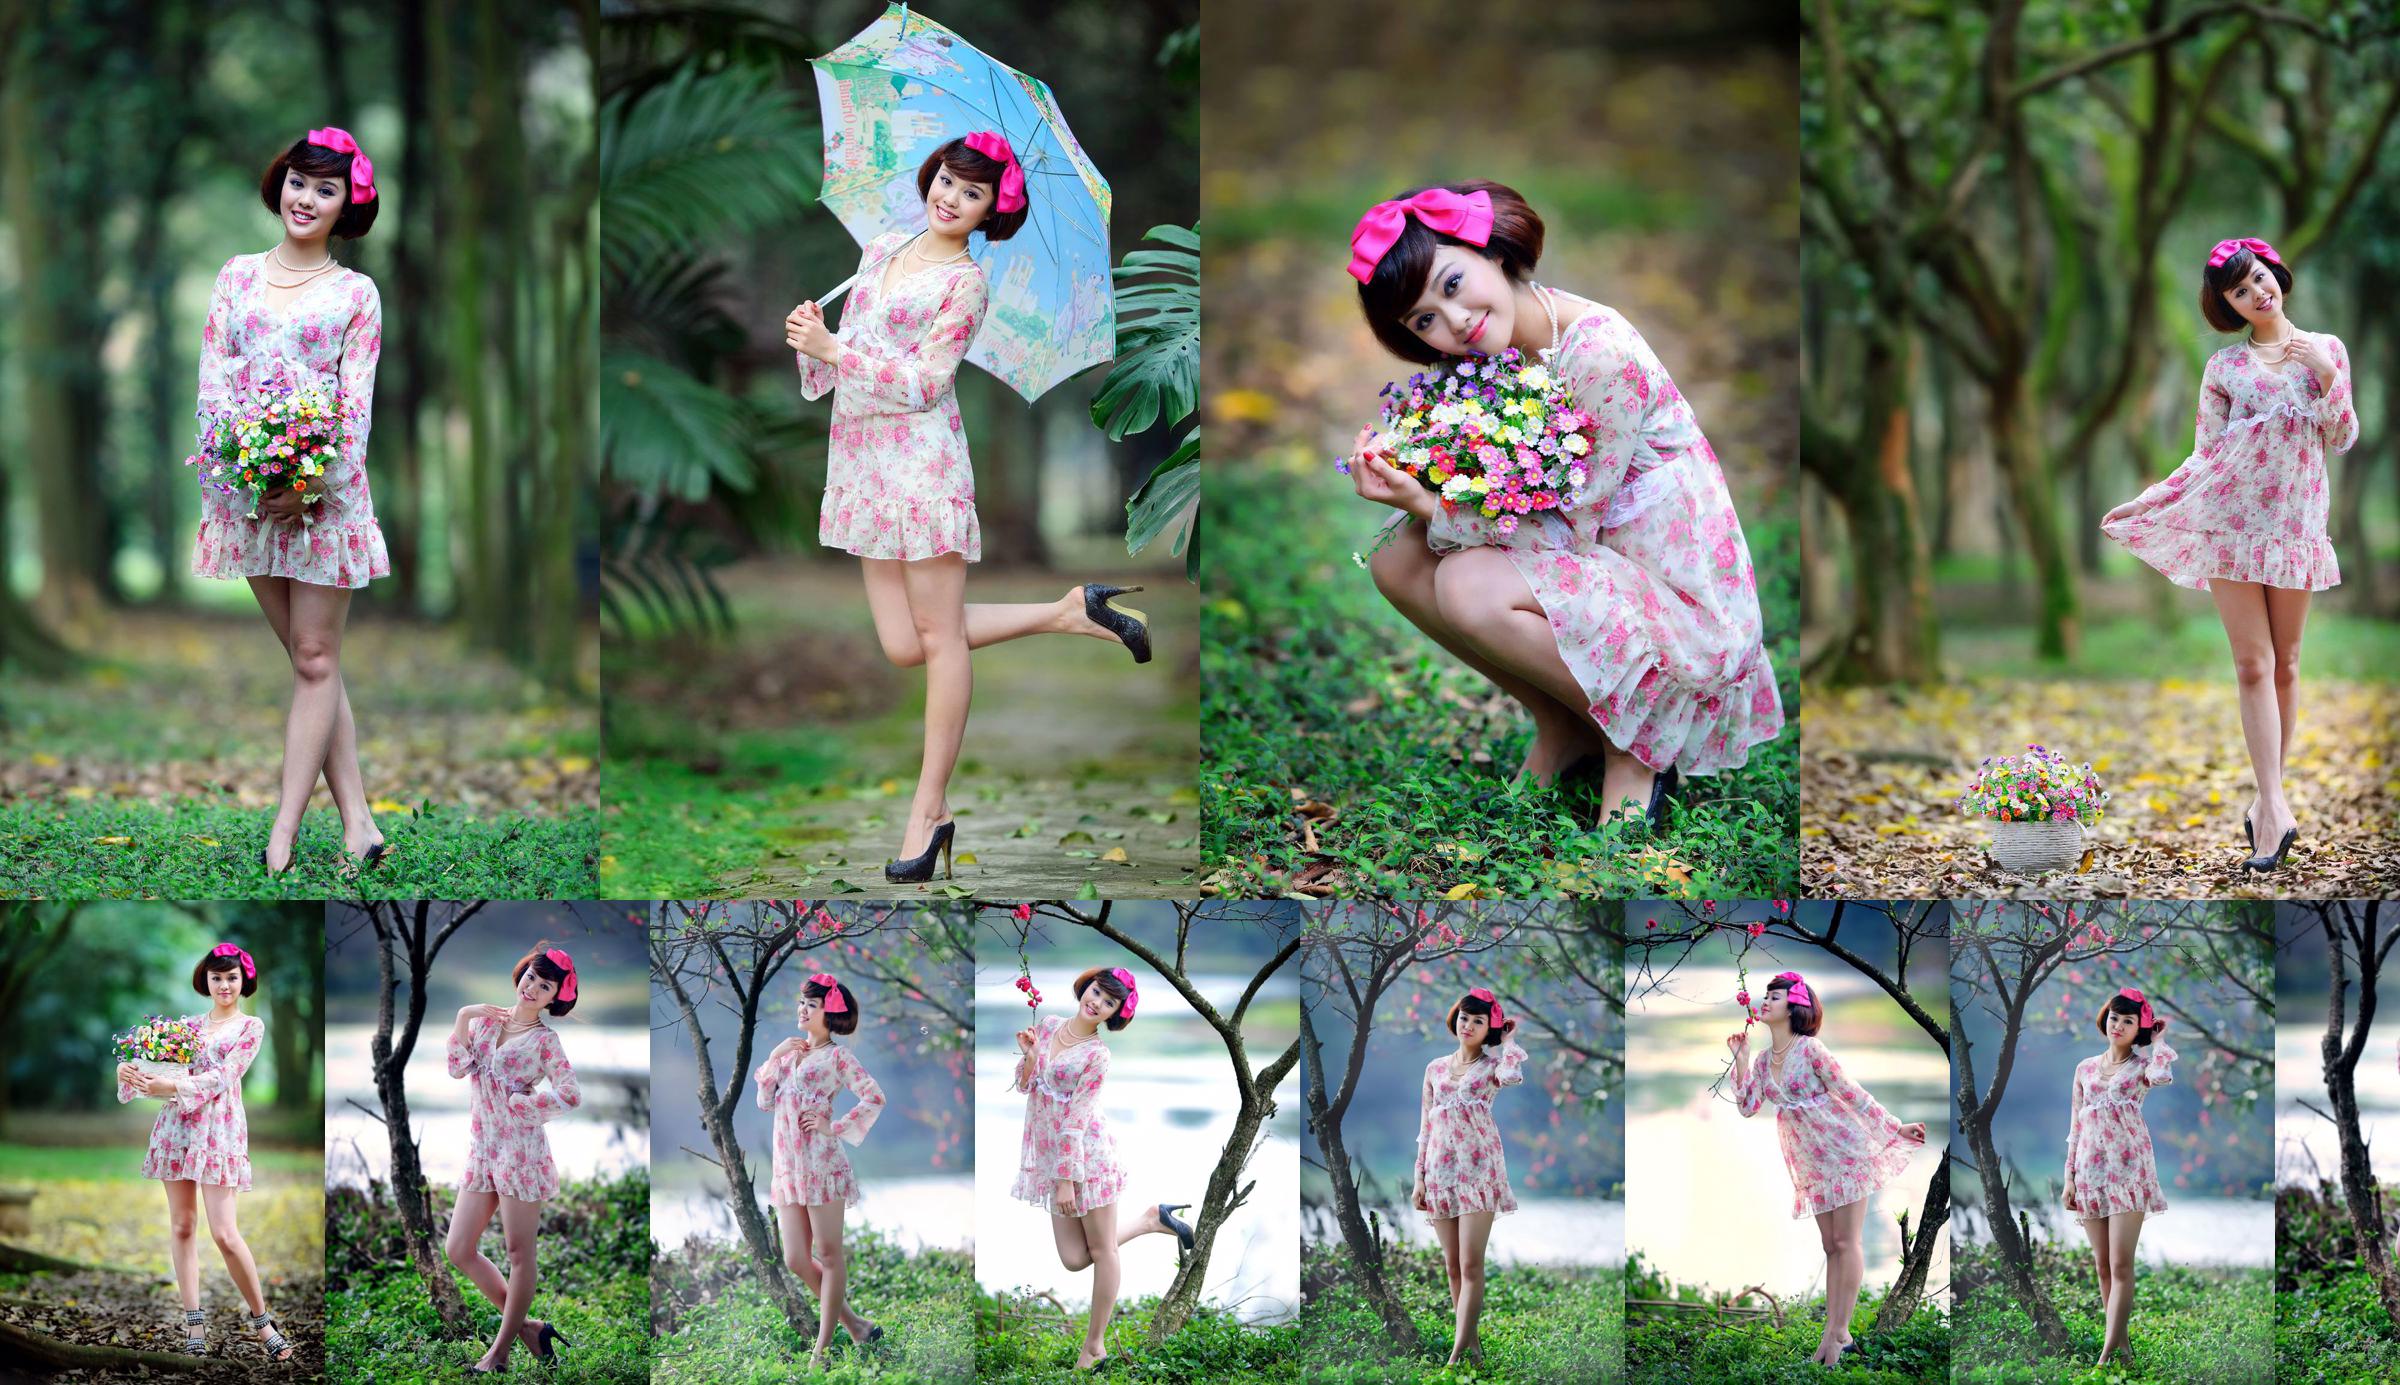 Ragazza taiwanese Yin Zhi "Riprese all'aperto di bei vestiti colorati" No.77b255 Pagina 3